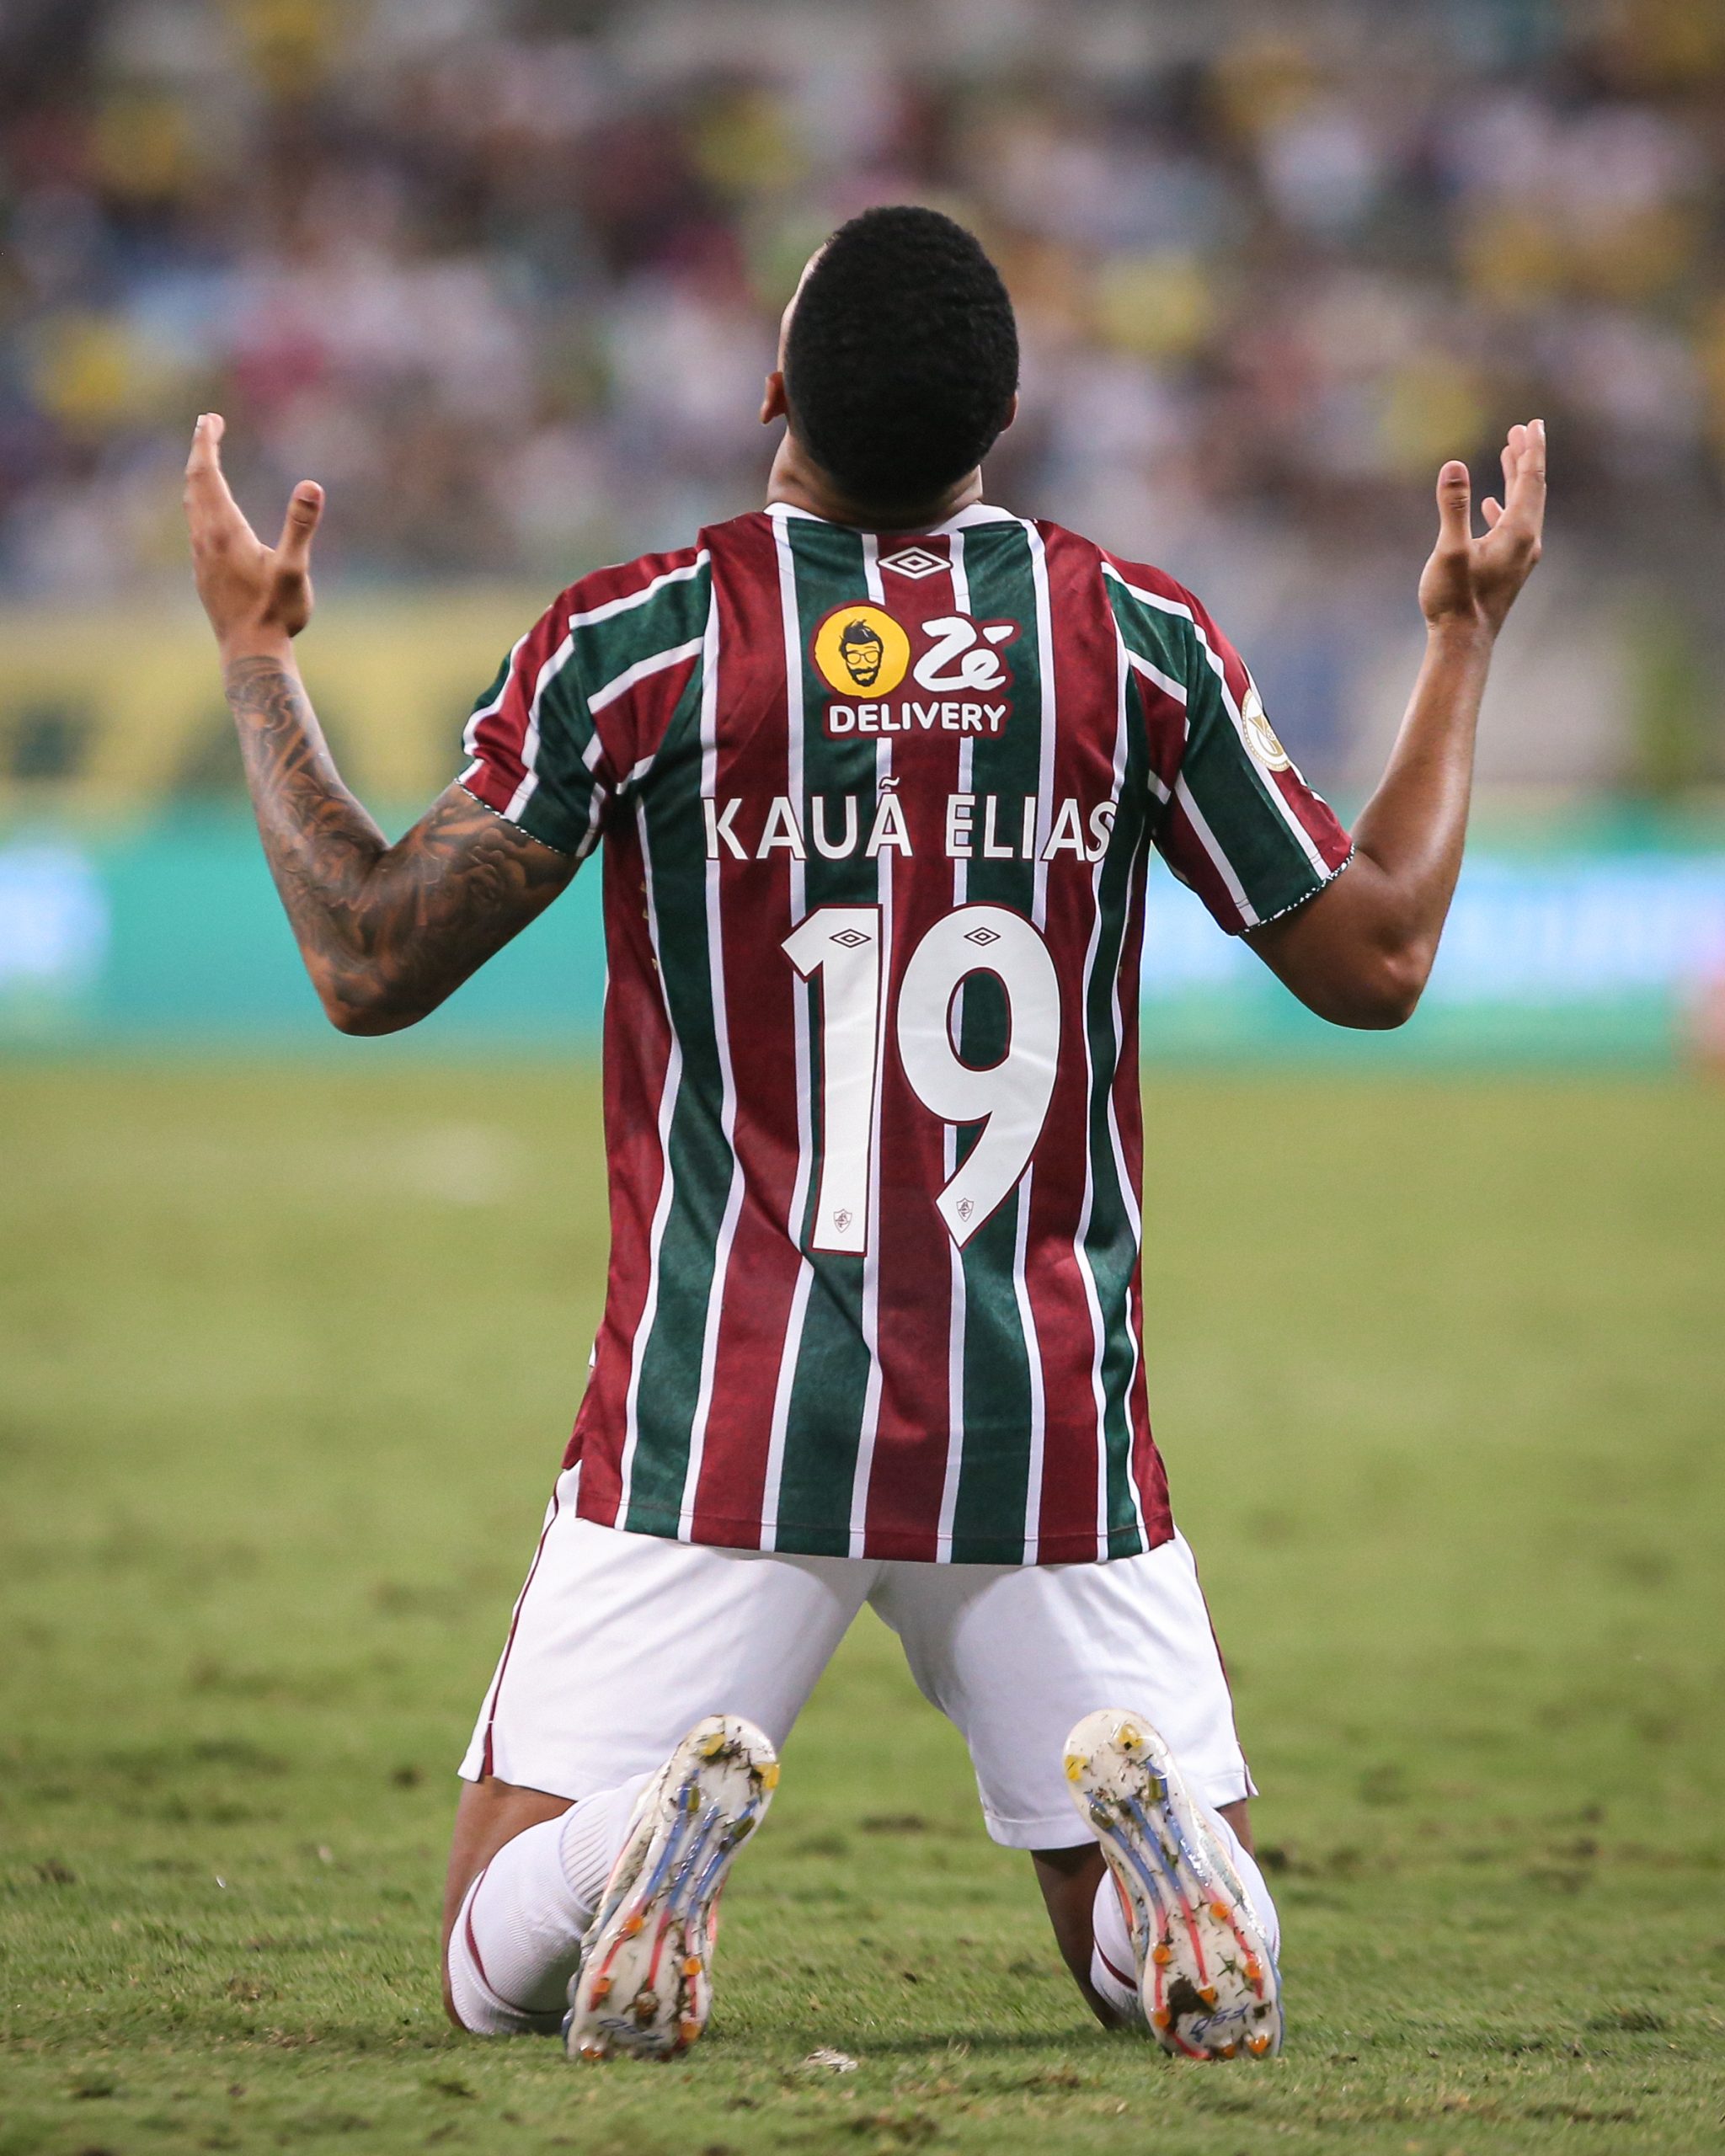 kauã elias comemorndo seu segundo gol com a camisa tricolor FOTO DE MARCELO GONÇALVES / FLUMINENSE FC